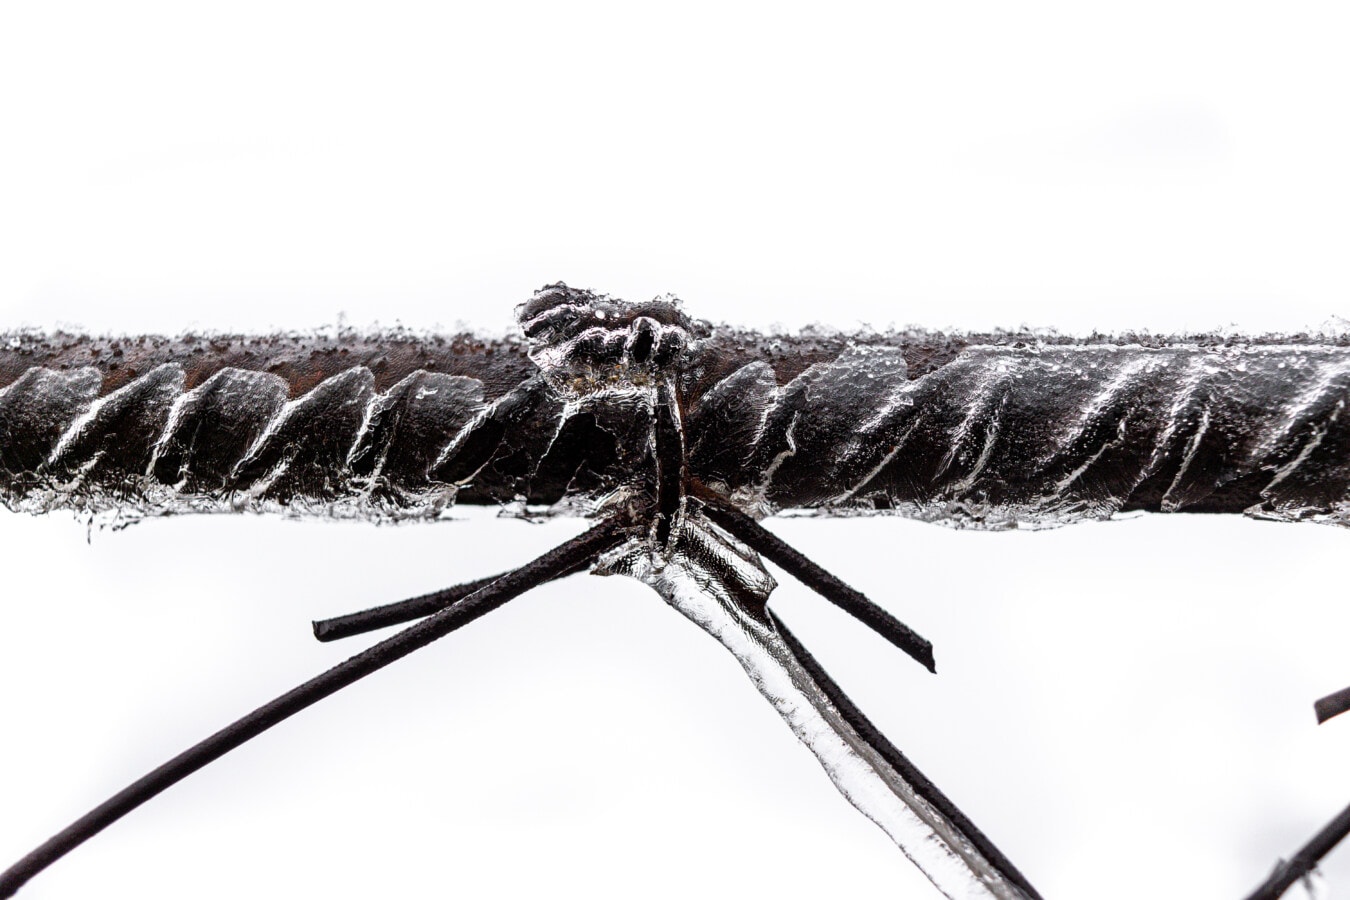 zamrznuto, žice, bodljikava žica, lijevano željezo, led kristal, hrđe, metal, željezo, ograda, pogled iz blizine